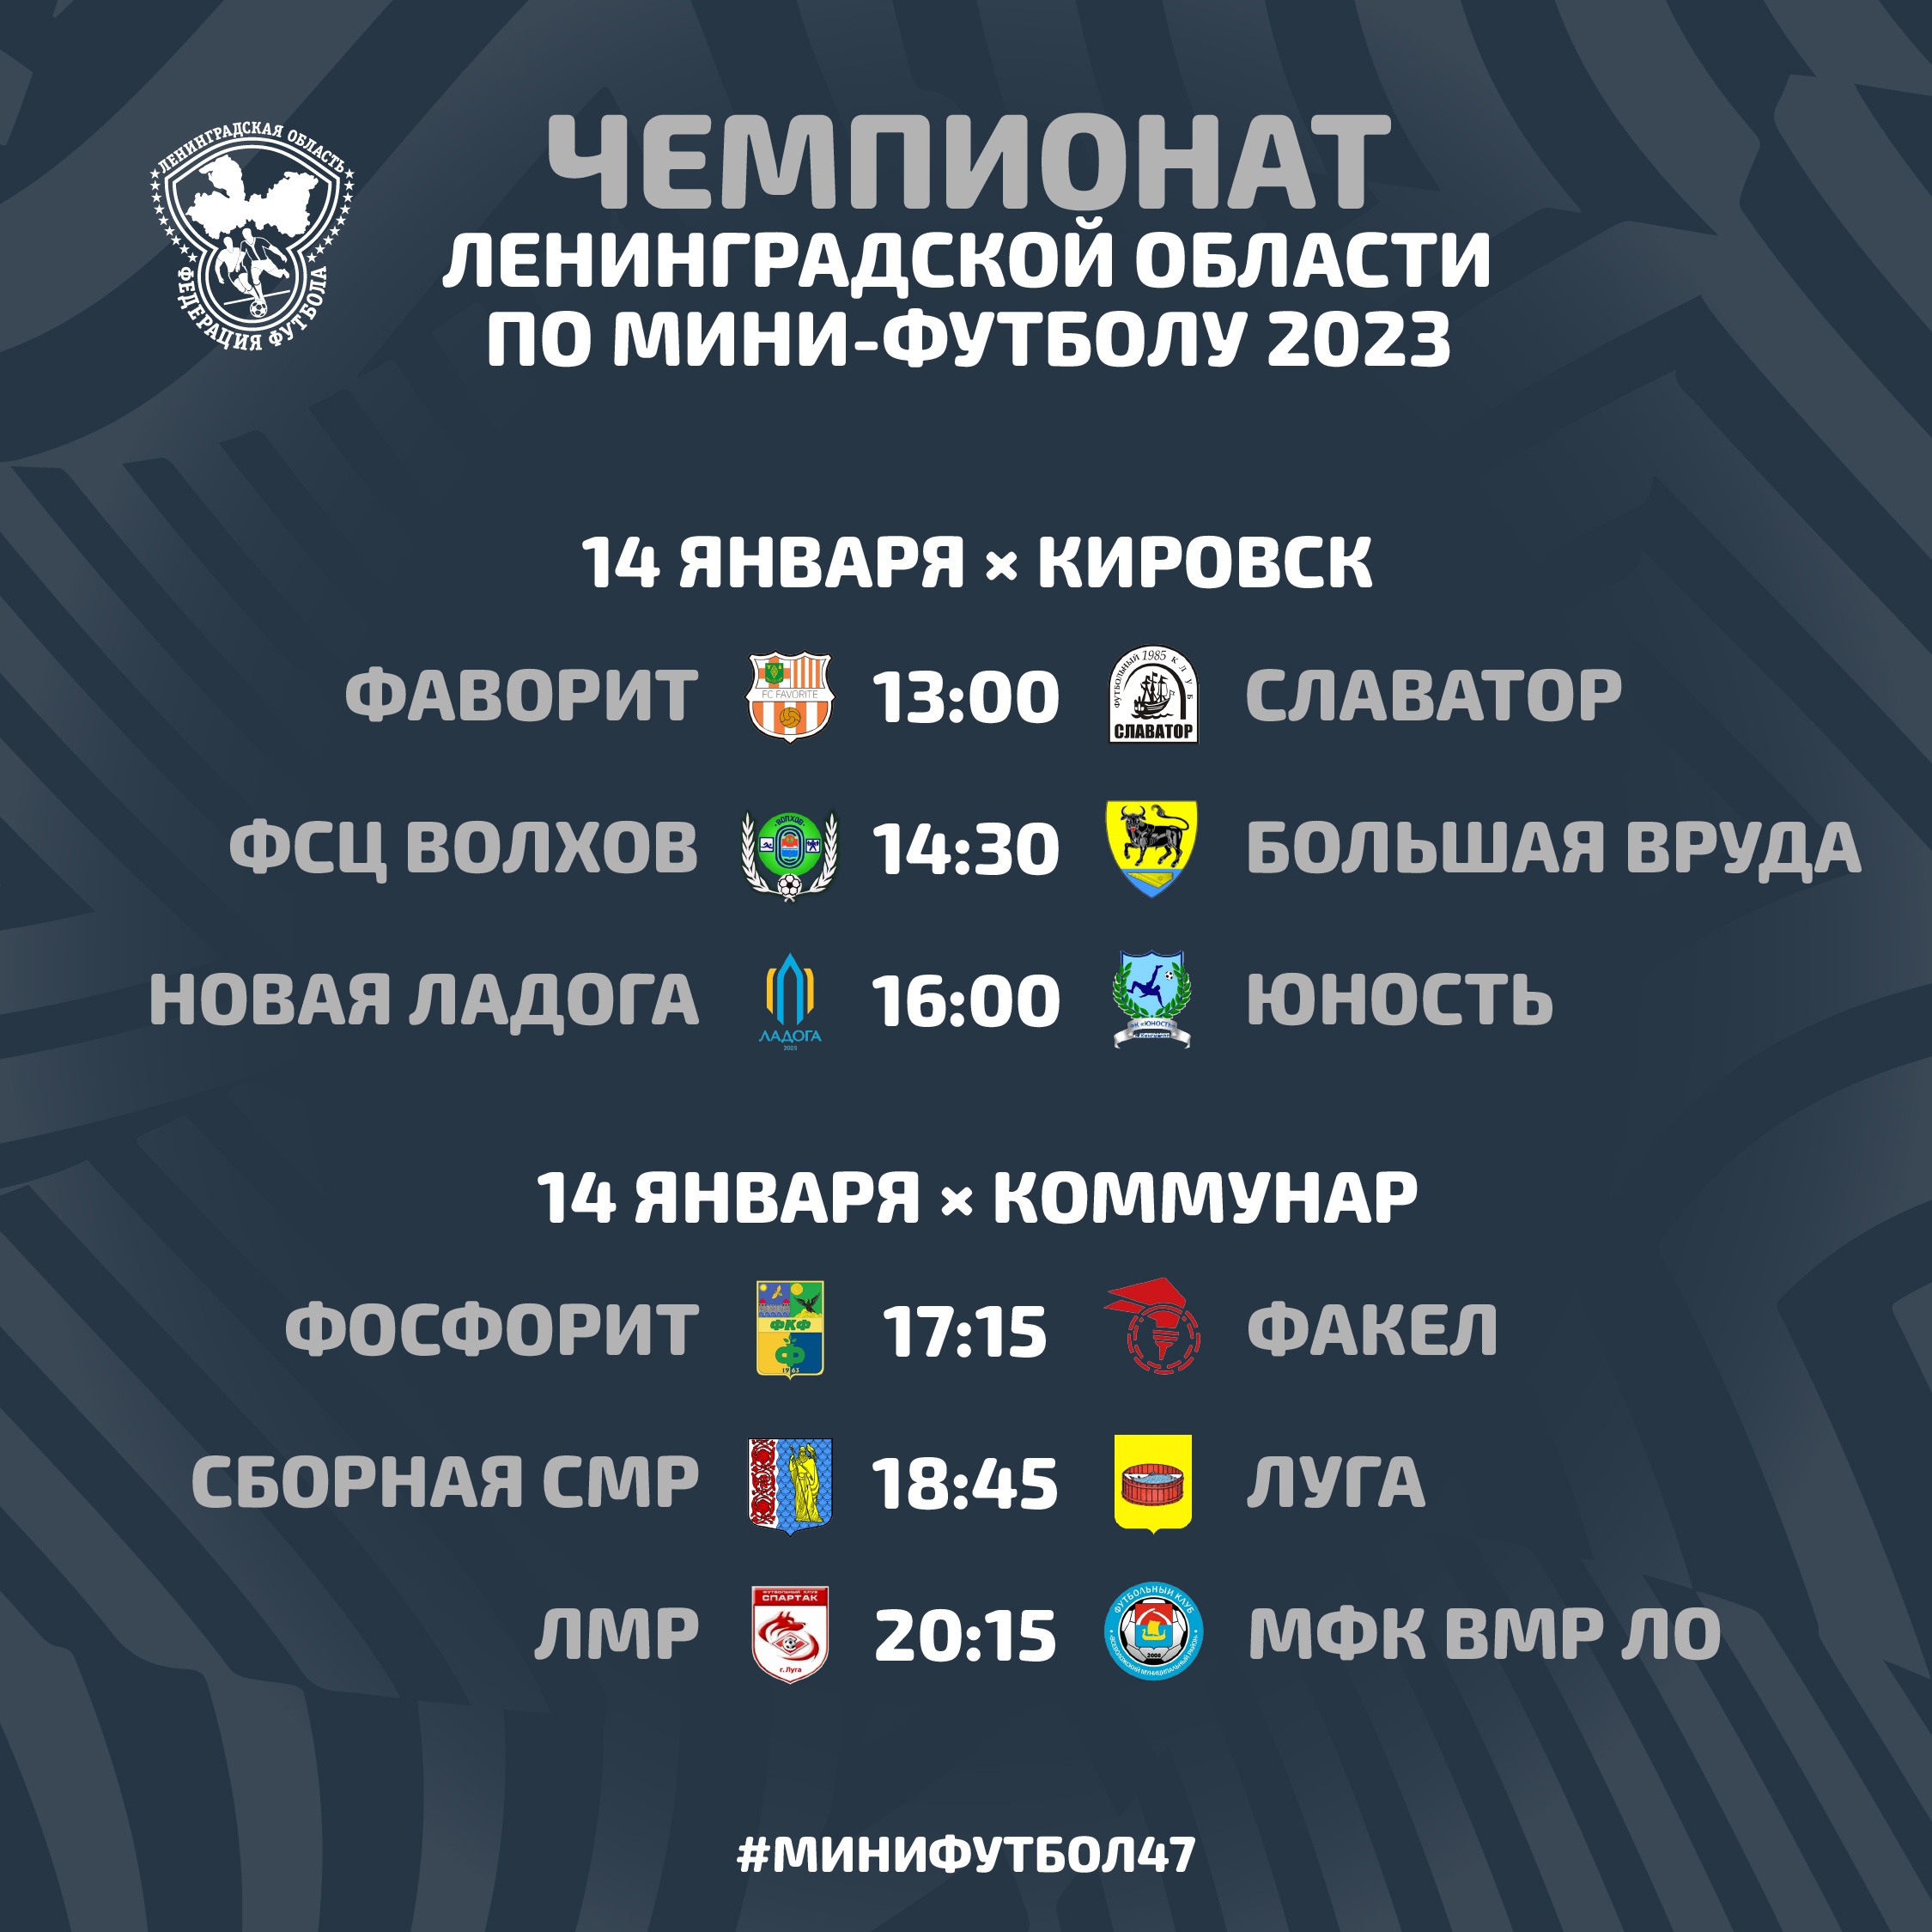 14 января состоится первый тур чемпионата по мини-футболу Ленинградской области